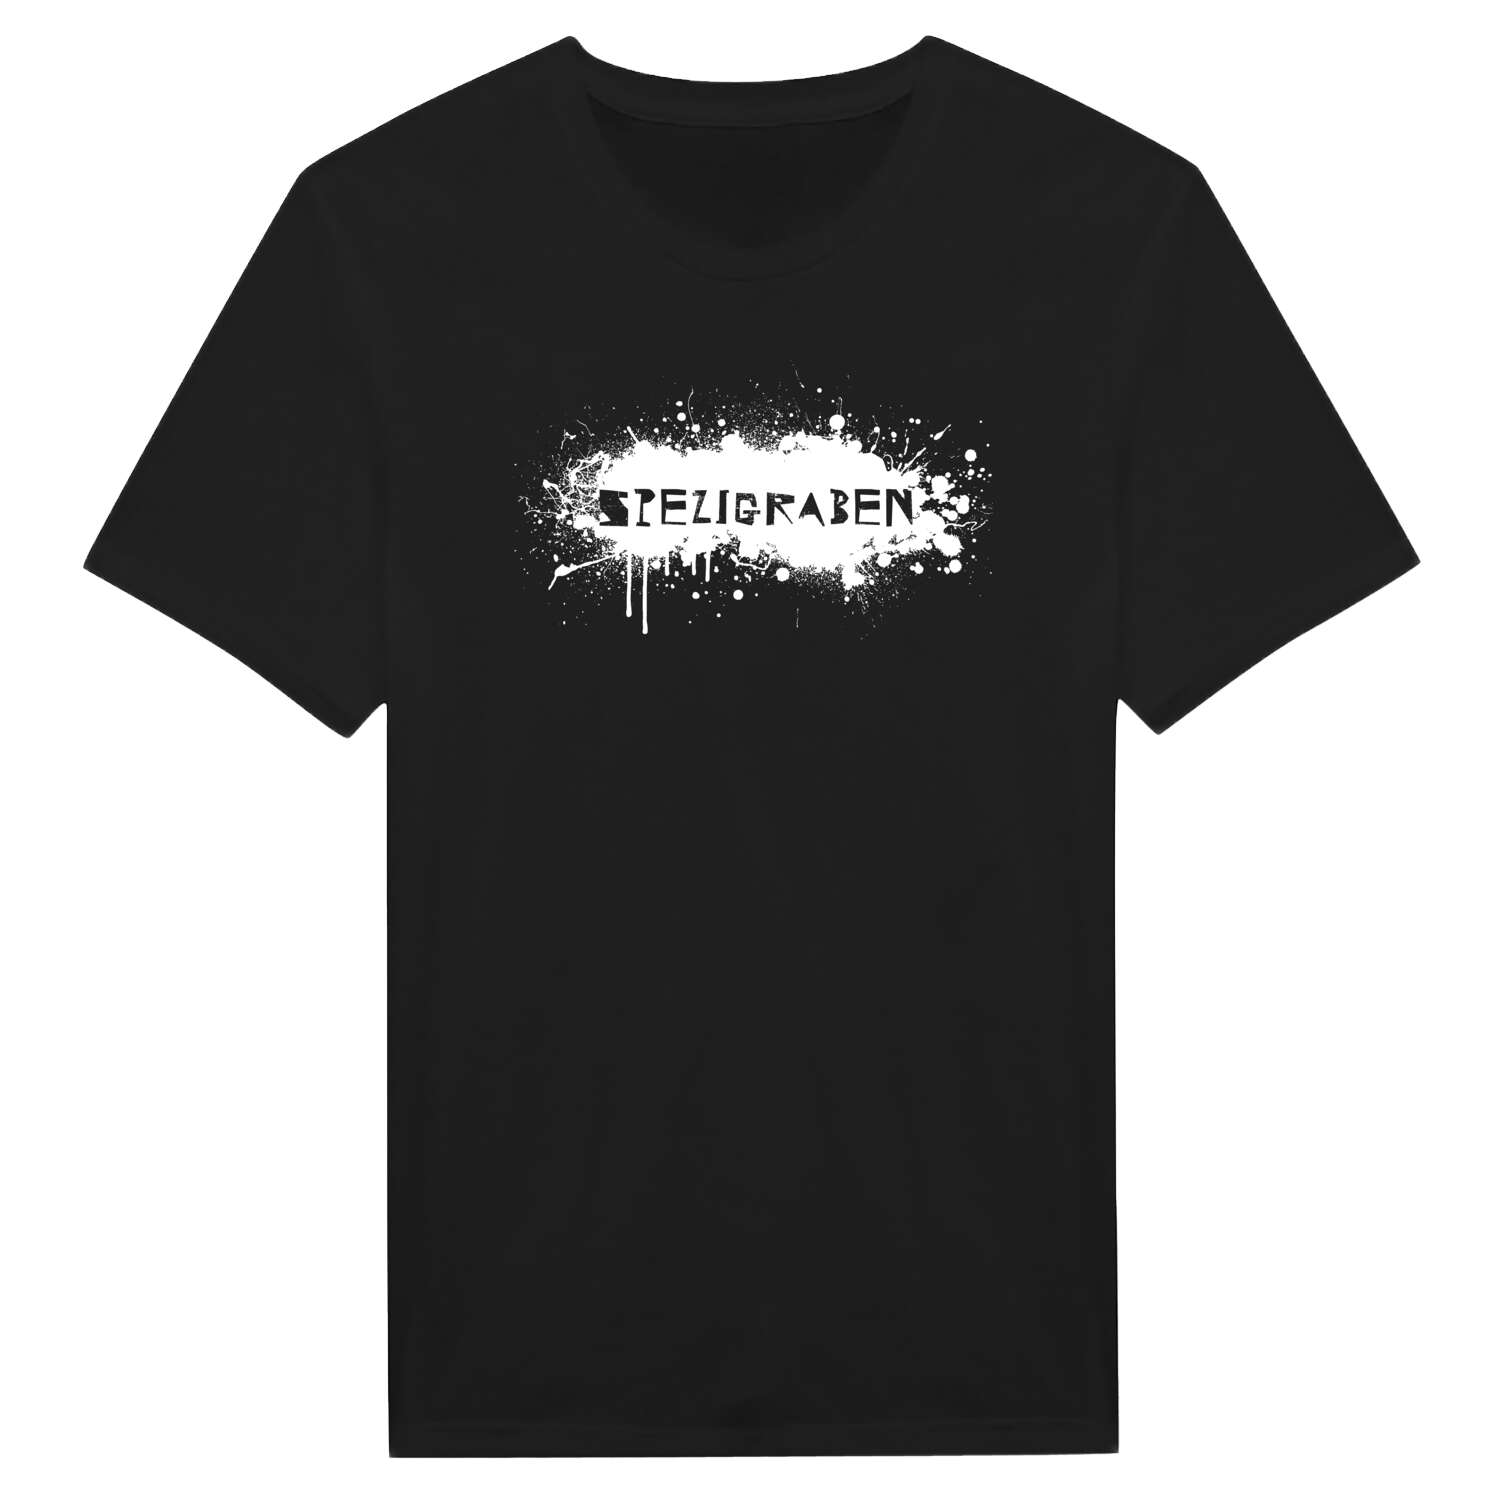 Spezigraben T-Shirt »Paint Splash Punk«